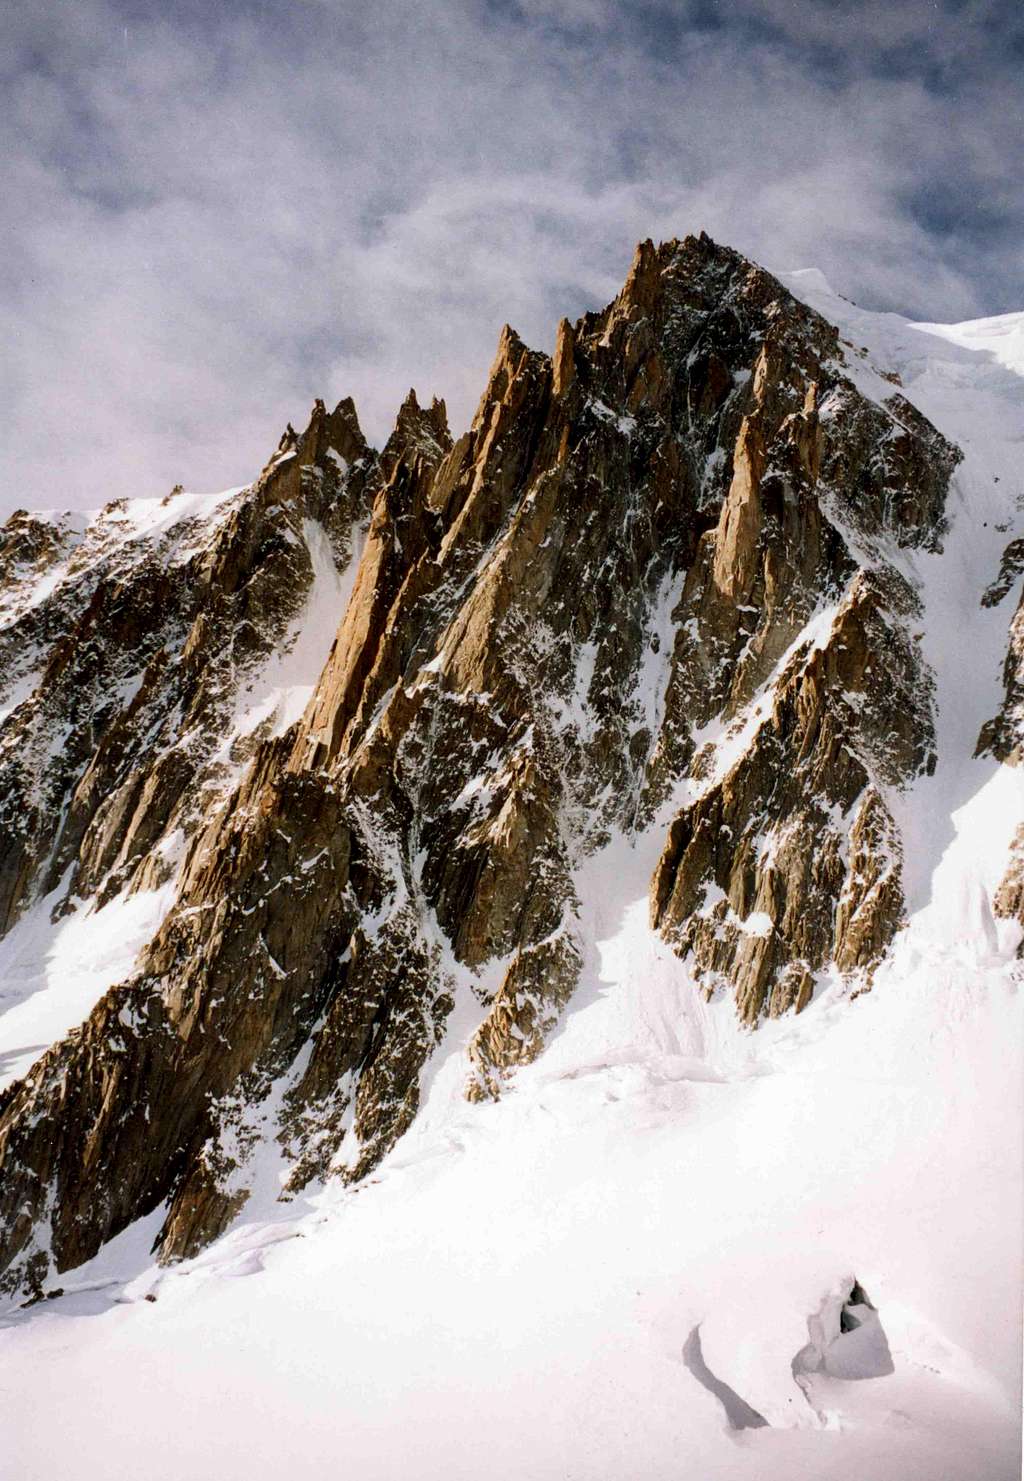 Mont Blanc du Tacul east face